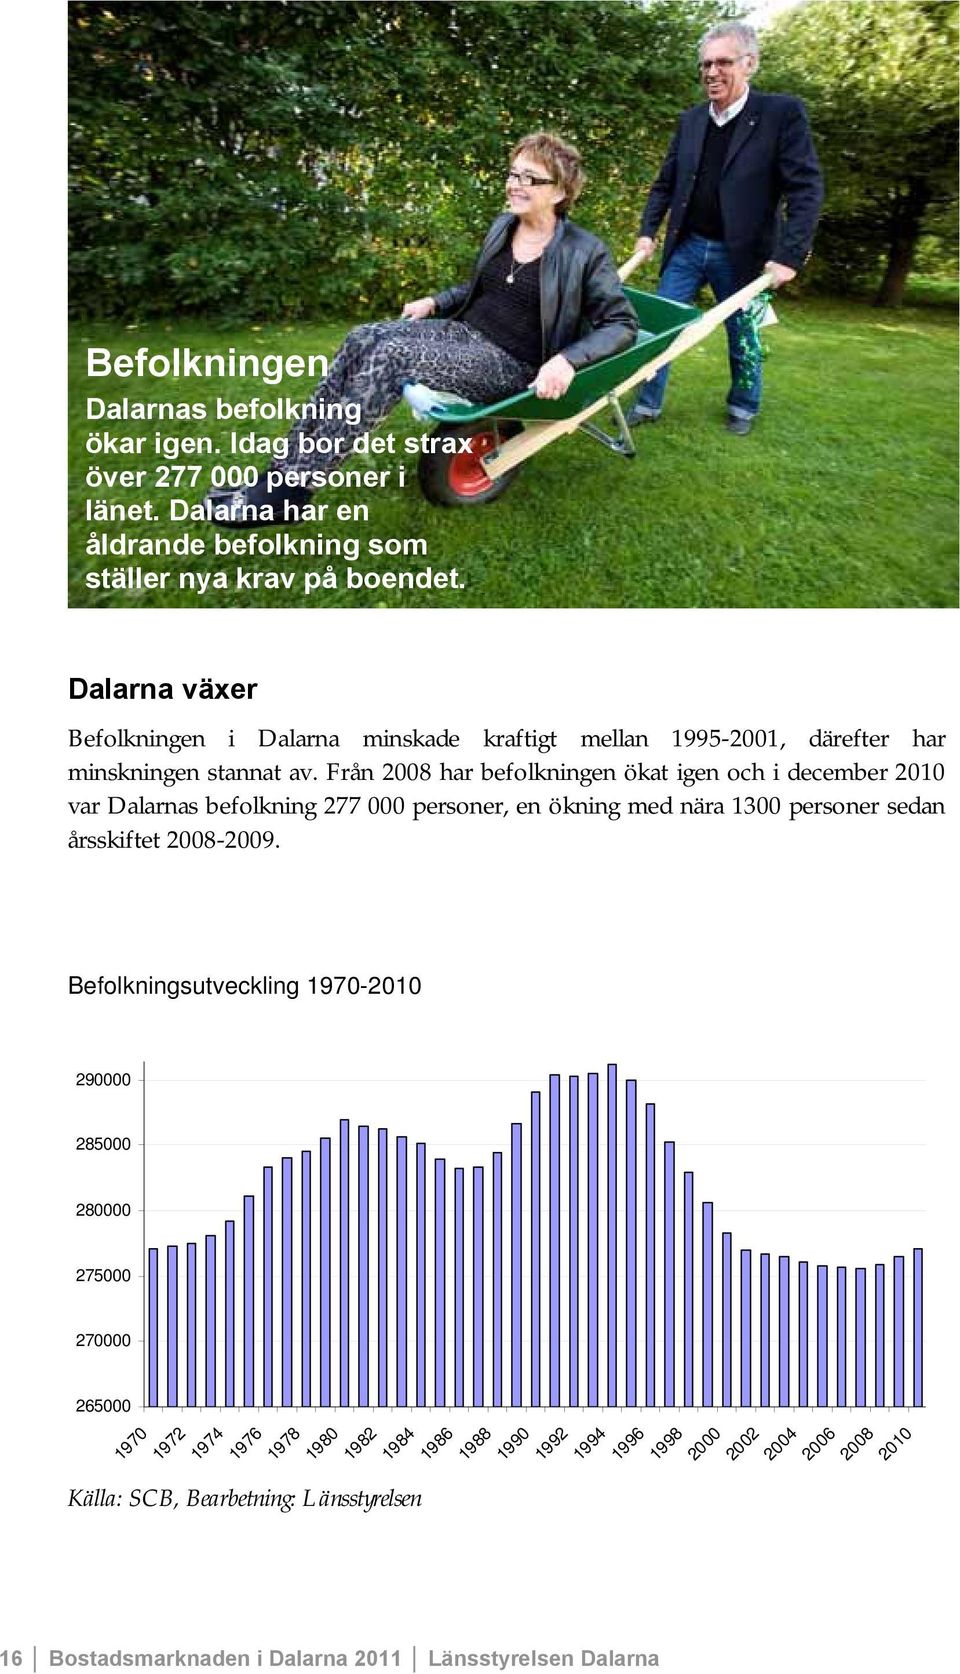 Från 2008 har befolkningen ökat igen och i december 2010 var Dalarnas befolkning 277 000 personer, en ökning med nära 1300 personer sedan årsskiftet 2008-2009.